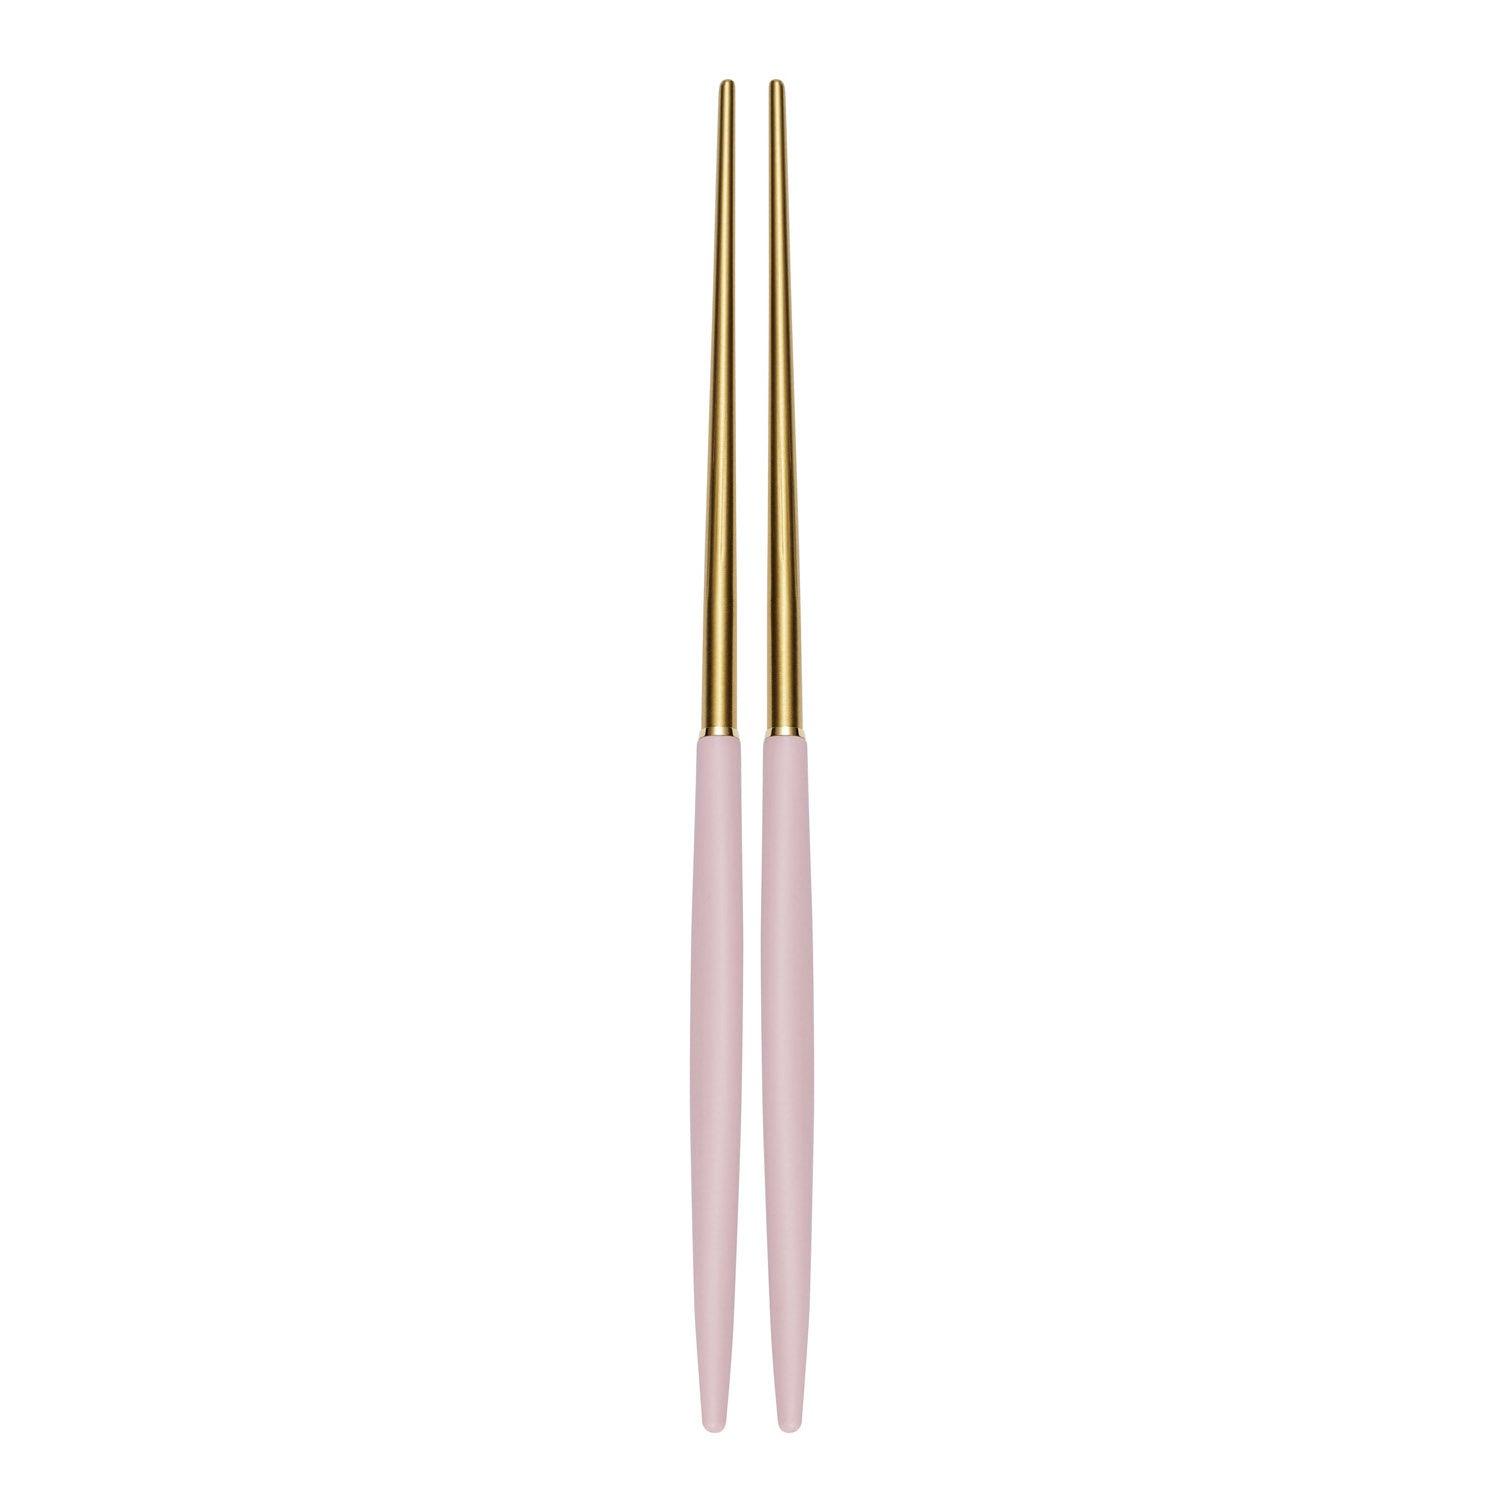 [Bogen] Eiffel Gold Chopsticks, 1set - HANKOOK